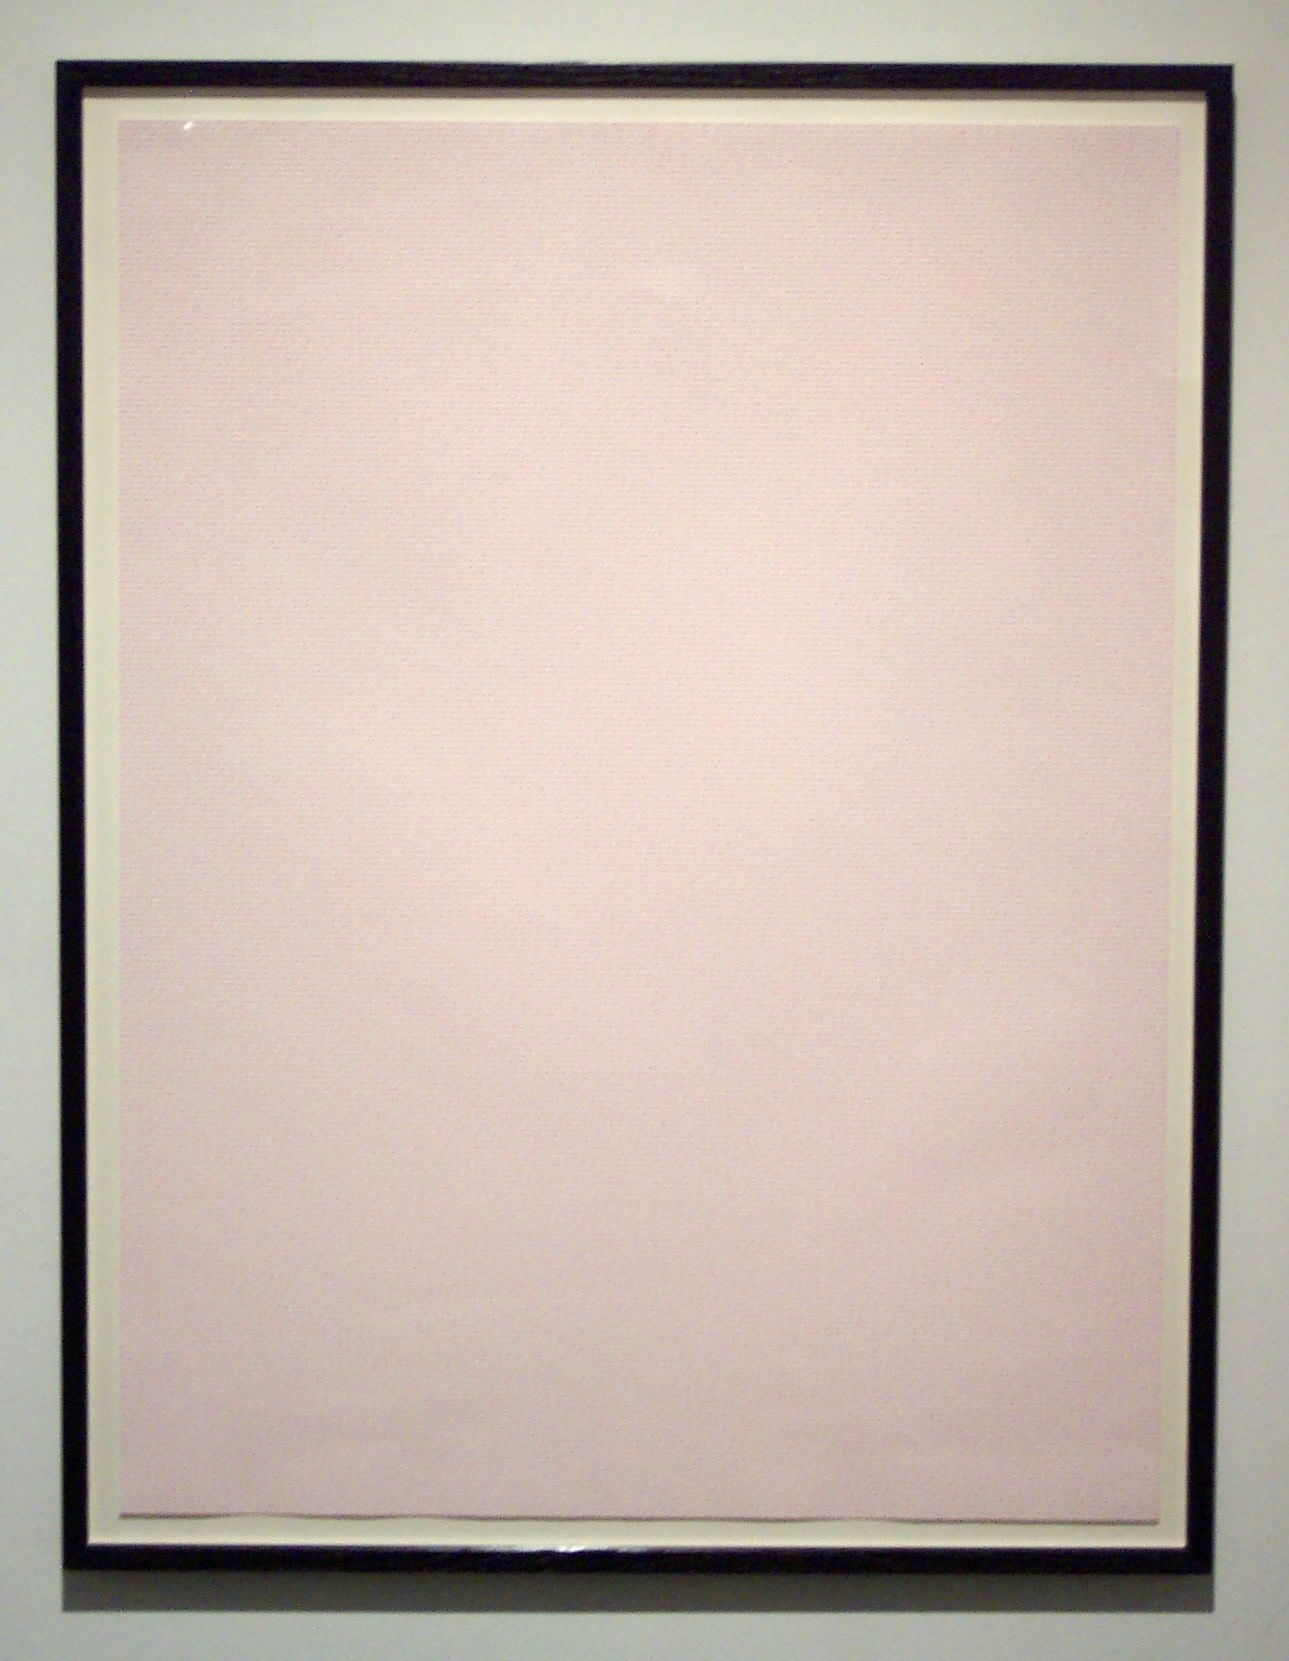 Framed blank paper